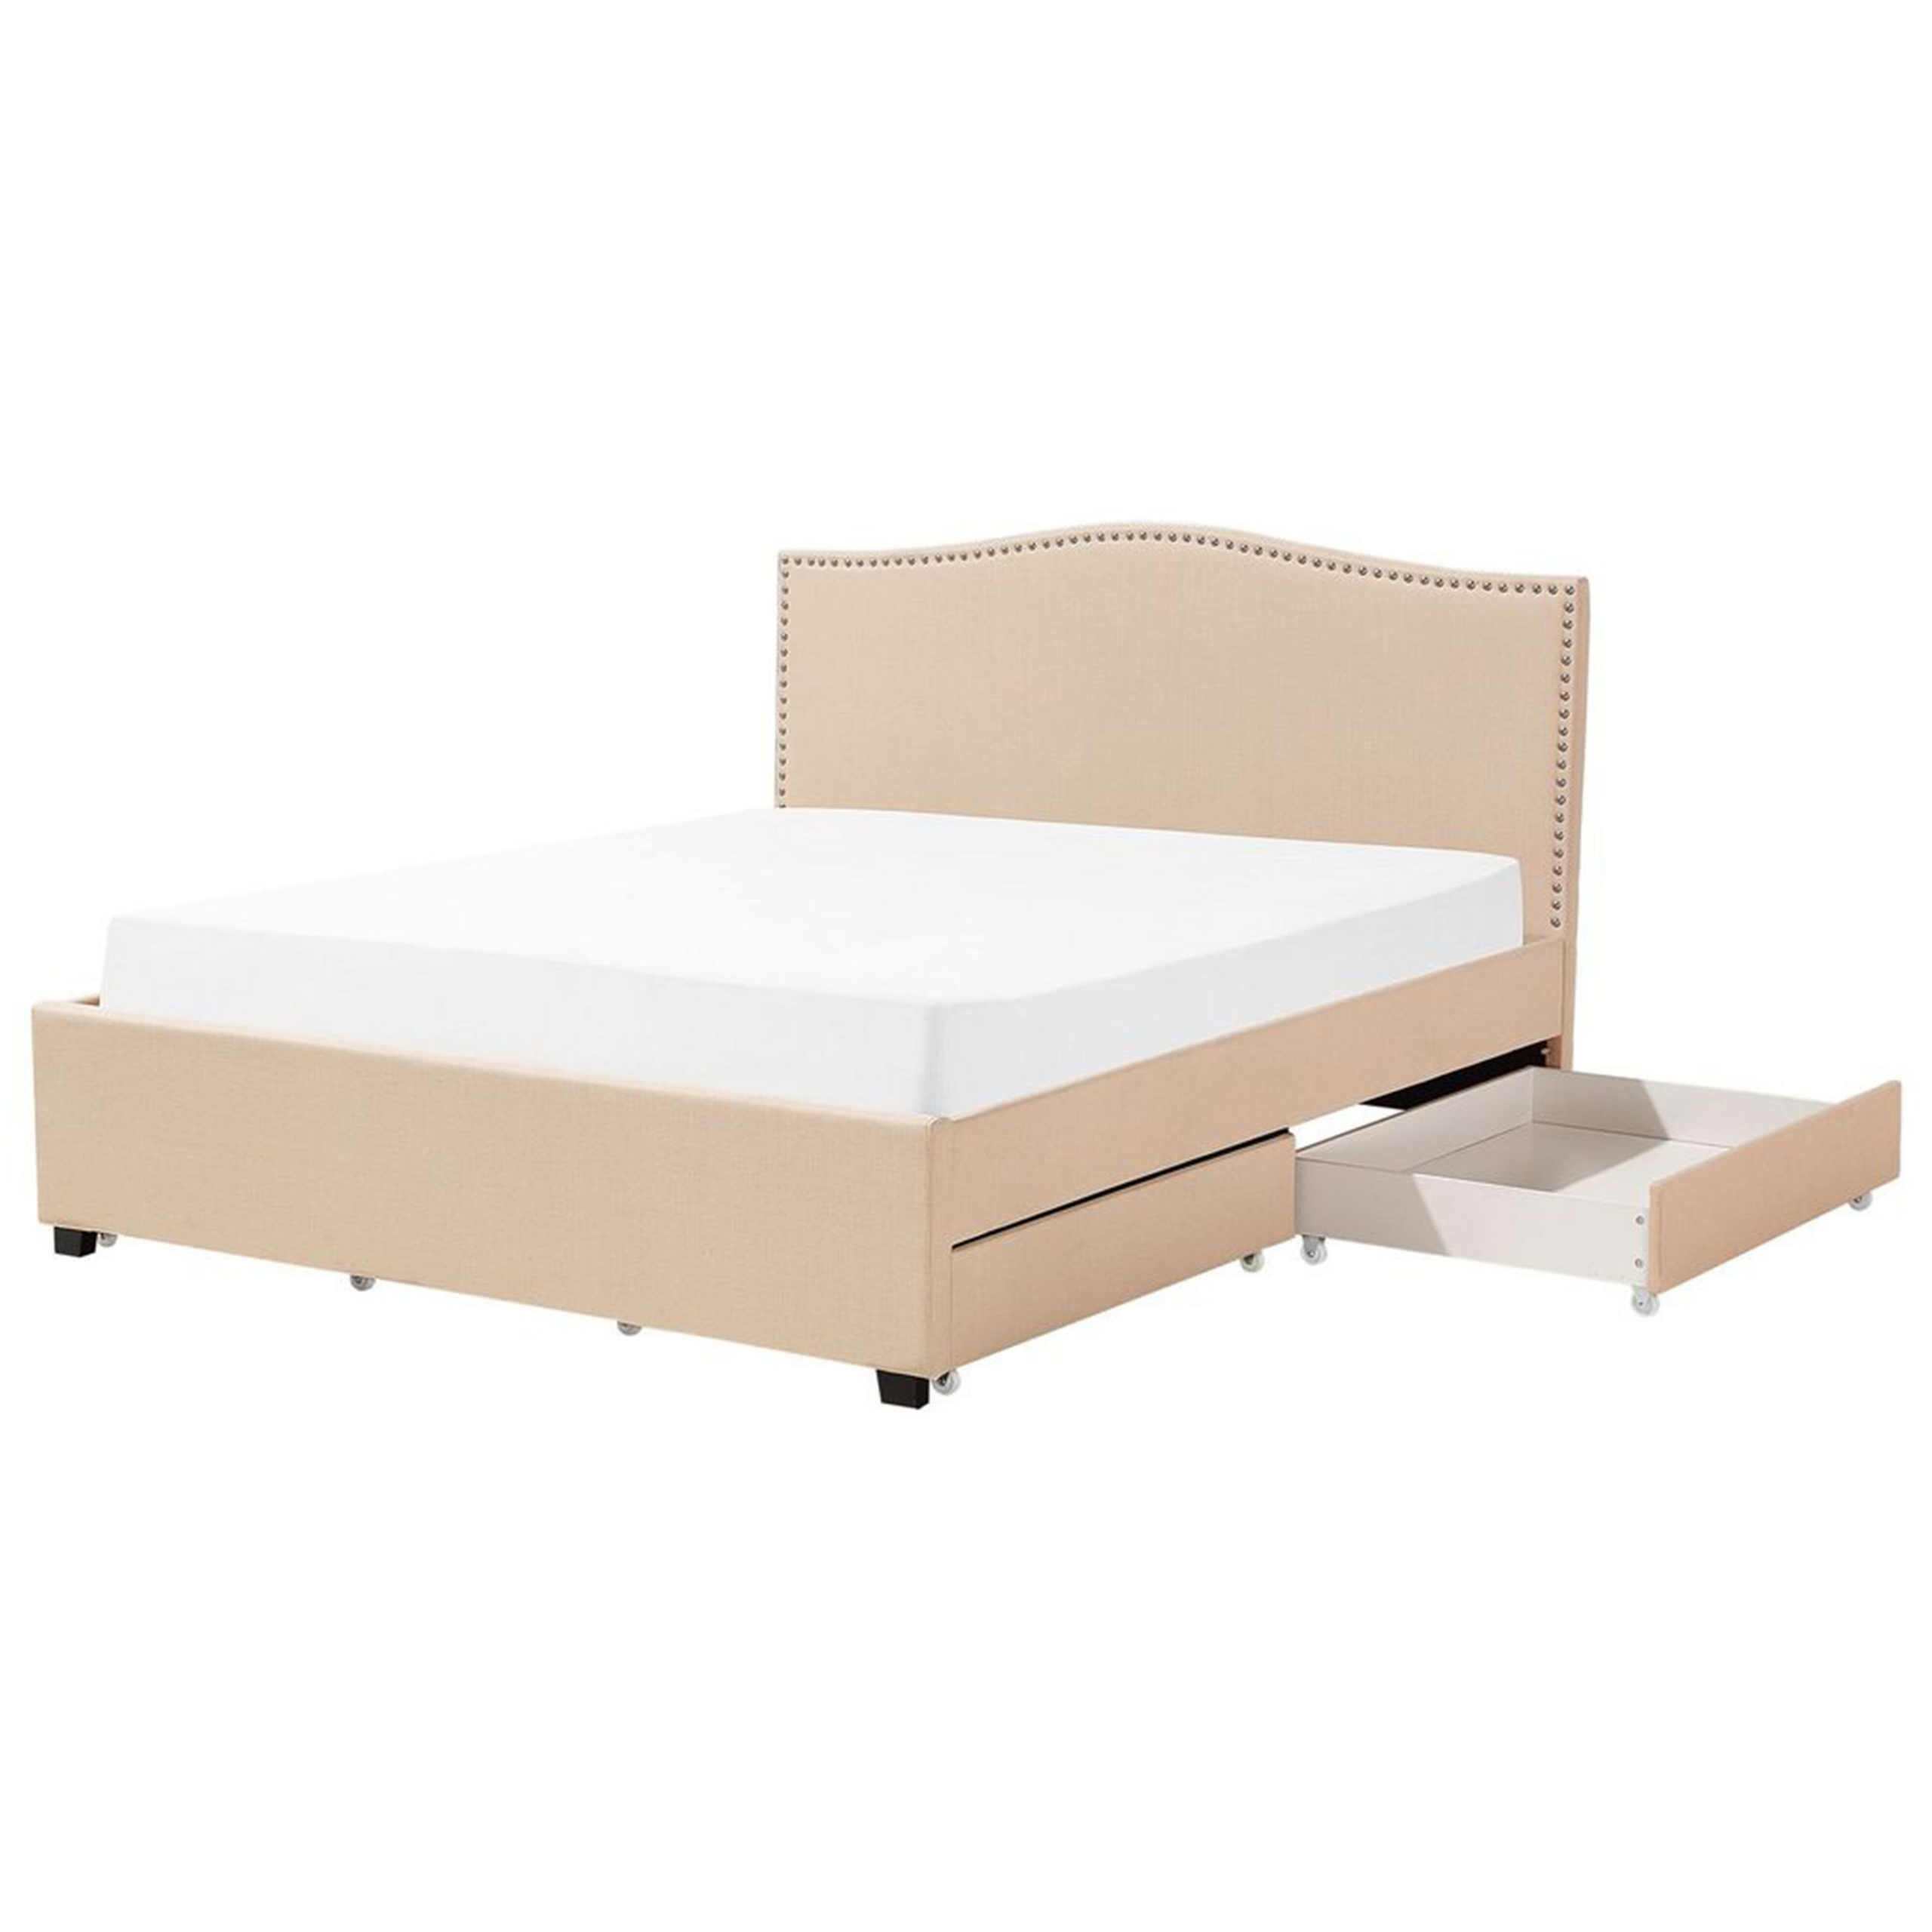 Beliani Bed Frame Beige Polyester Upholstered Drawer Storage 6ft EU Super King Size Traditional Design